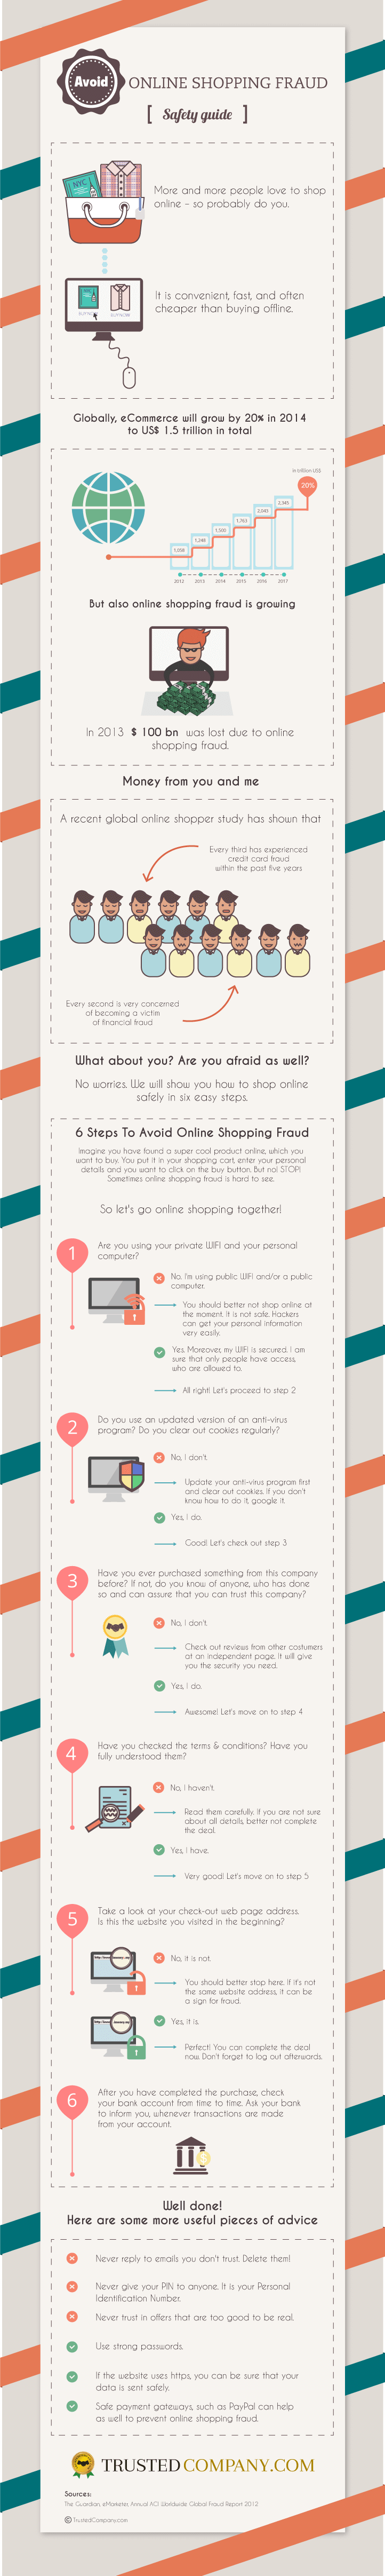 6-steps to avoid Online Shopping Fraud